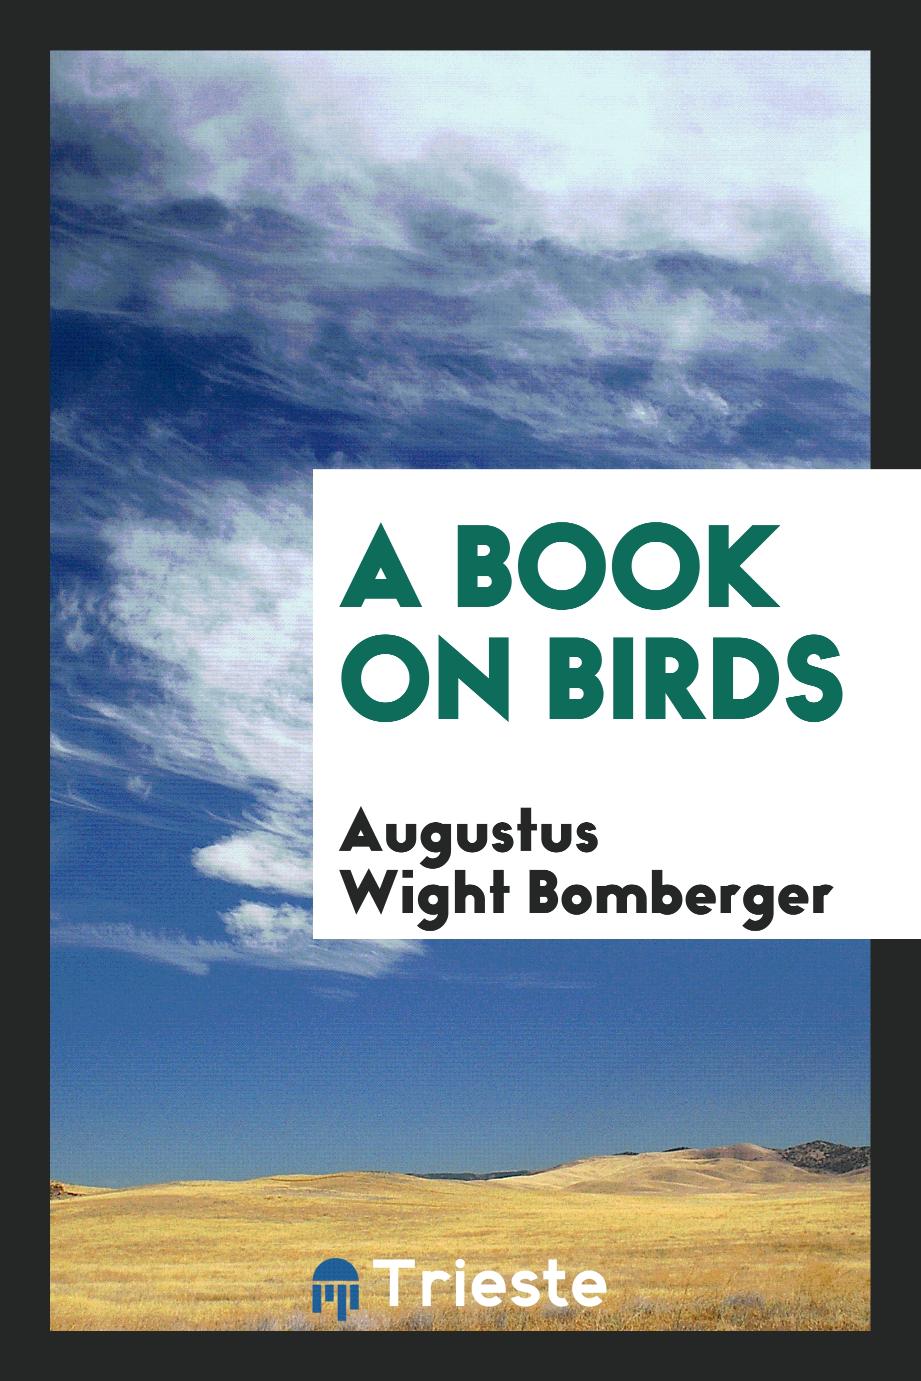 A book on birds